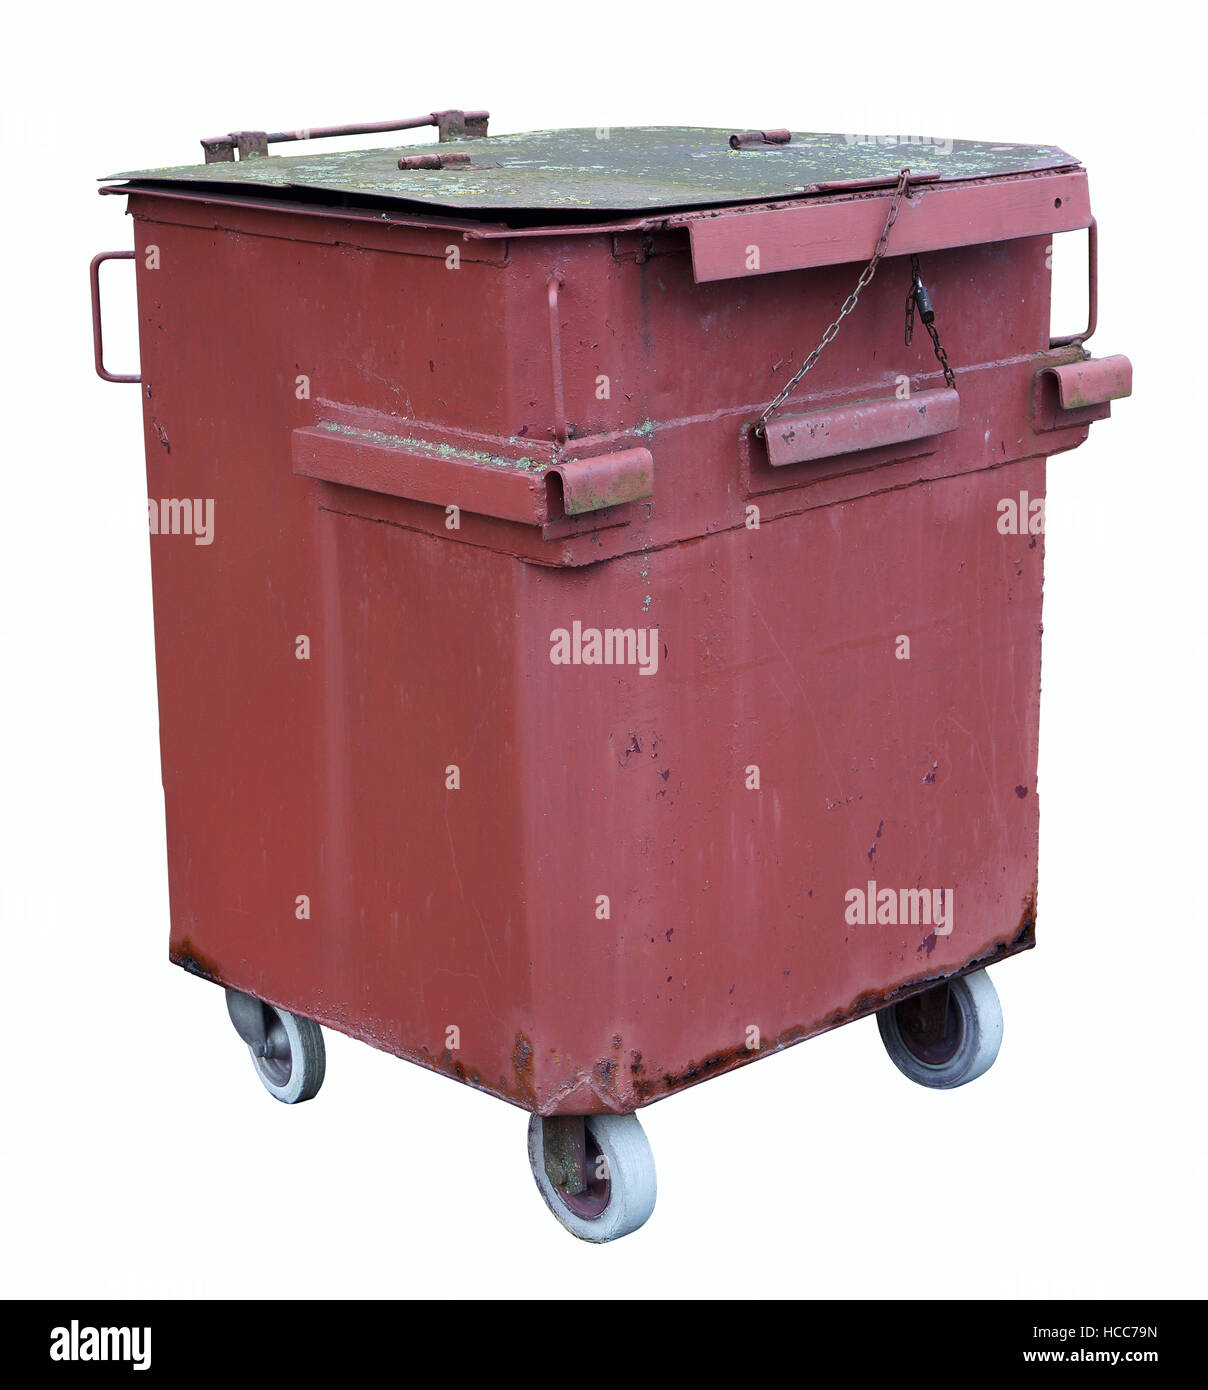 Vintage red conteneur pour déchets alimentaires soudés manuellement à partir de feuilles d'acier. Isolated on white Banque D'Images